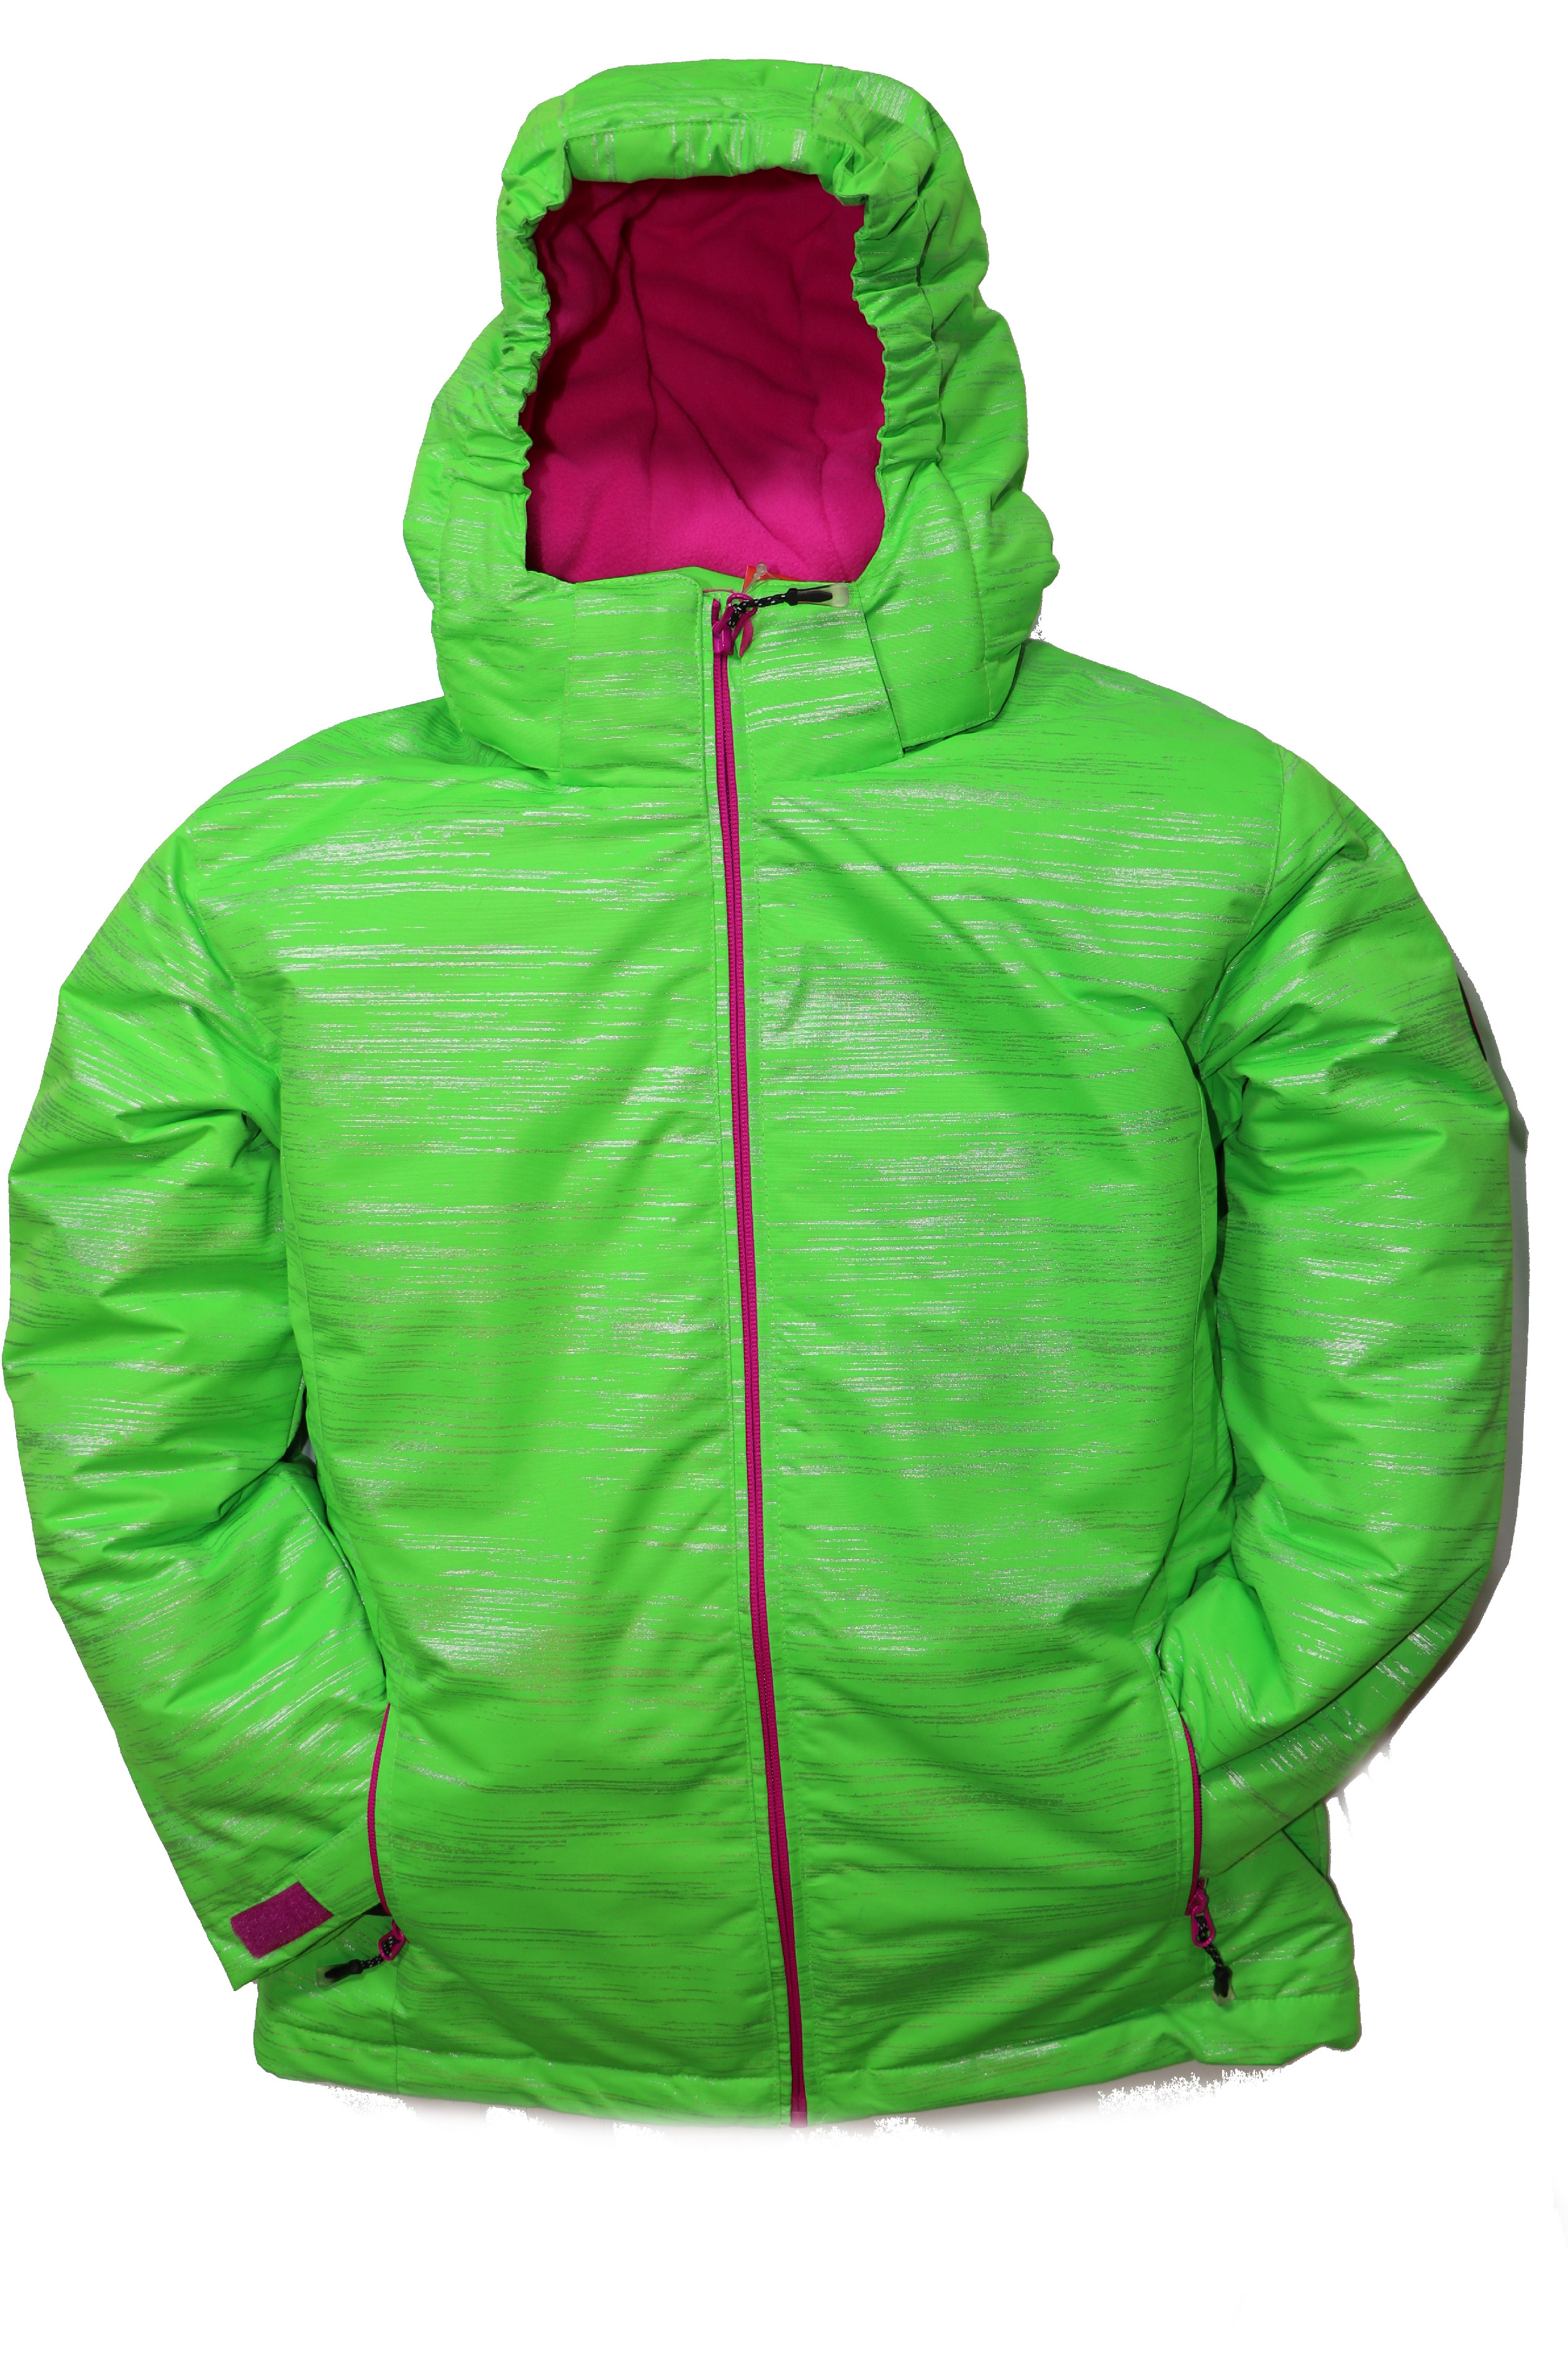 Dětská zimní bunda volného střihu HA04-M2 zelená vel. 134-164 cm Barva: Zelená, Velikost: 134 - 140 cm